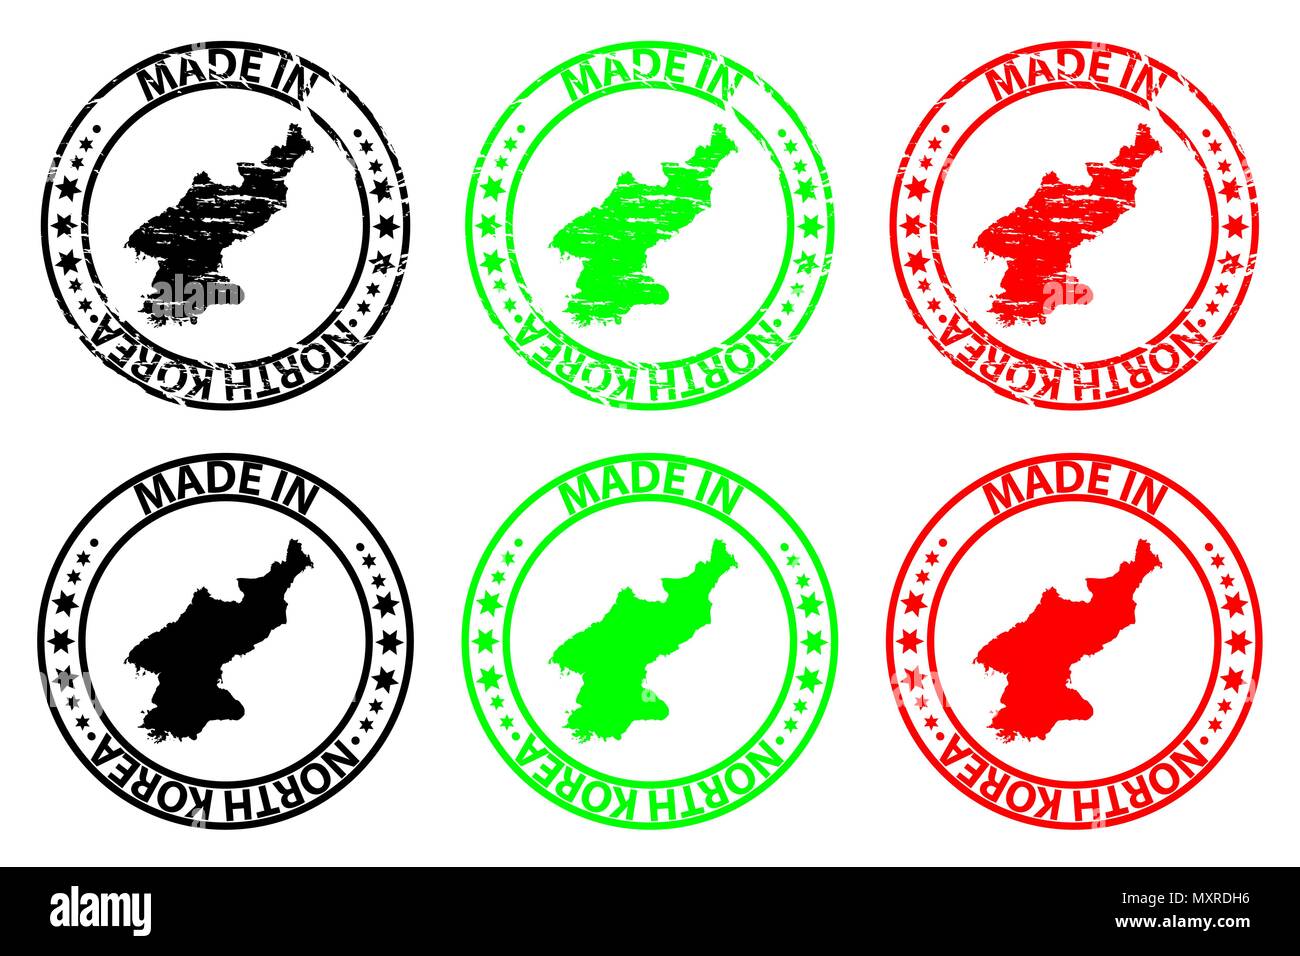 Faites en Corée du Nord - timbres en caoutchouc - vecteur, République populaire démocratique de Corée (RPDC) Carte - noir, vert et rouge Illustration de Vecteur